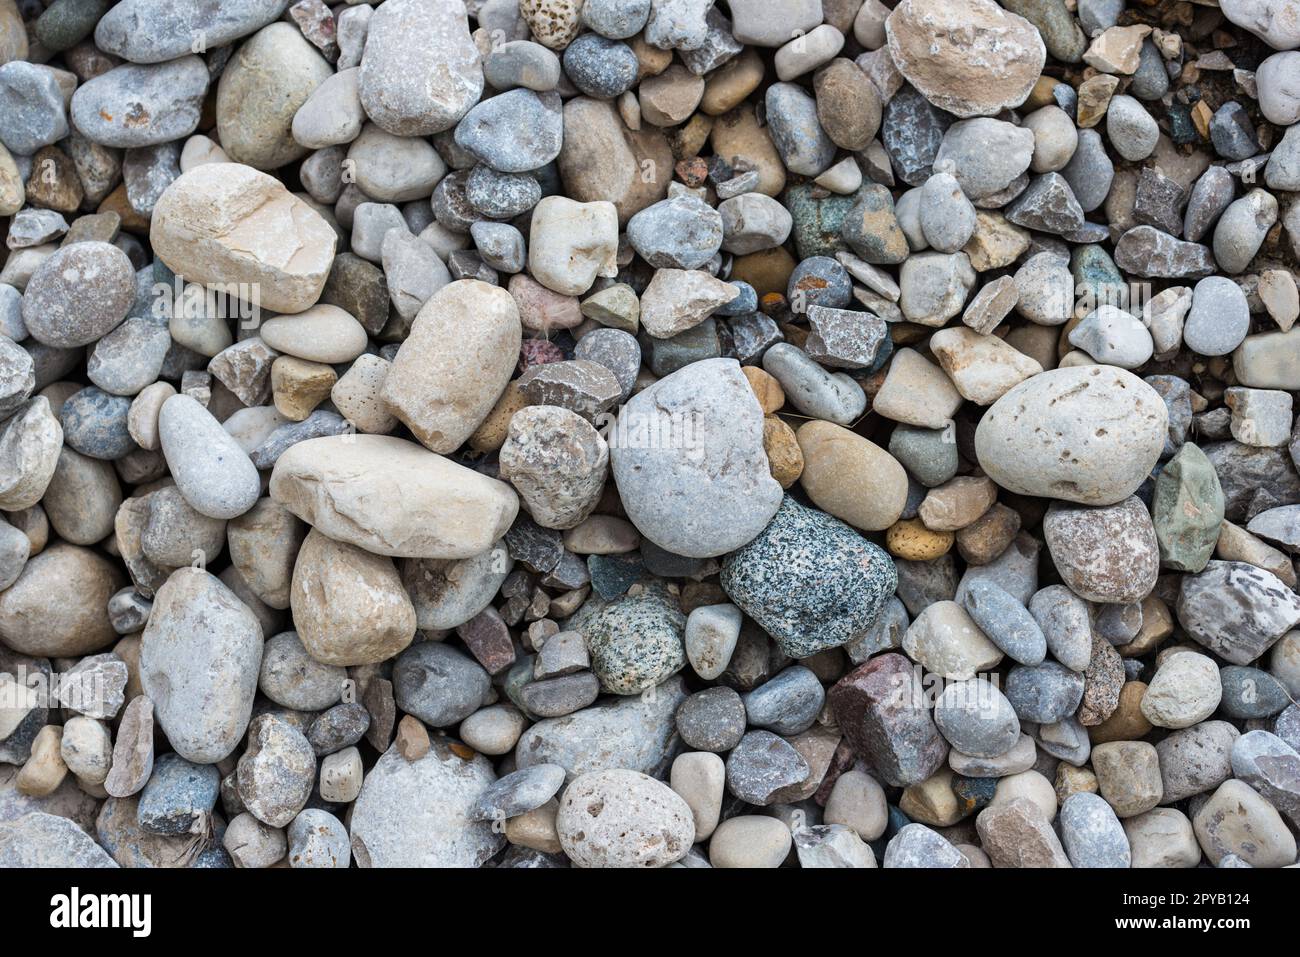 rochers lisses sur une plage, prises d'un point de vue de haut en bas Banque D'Images